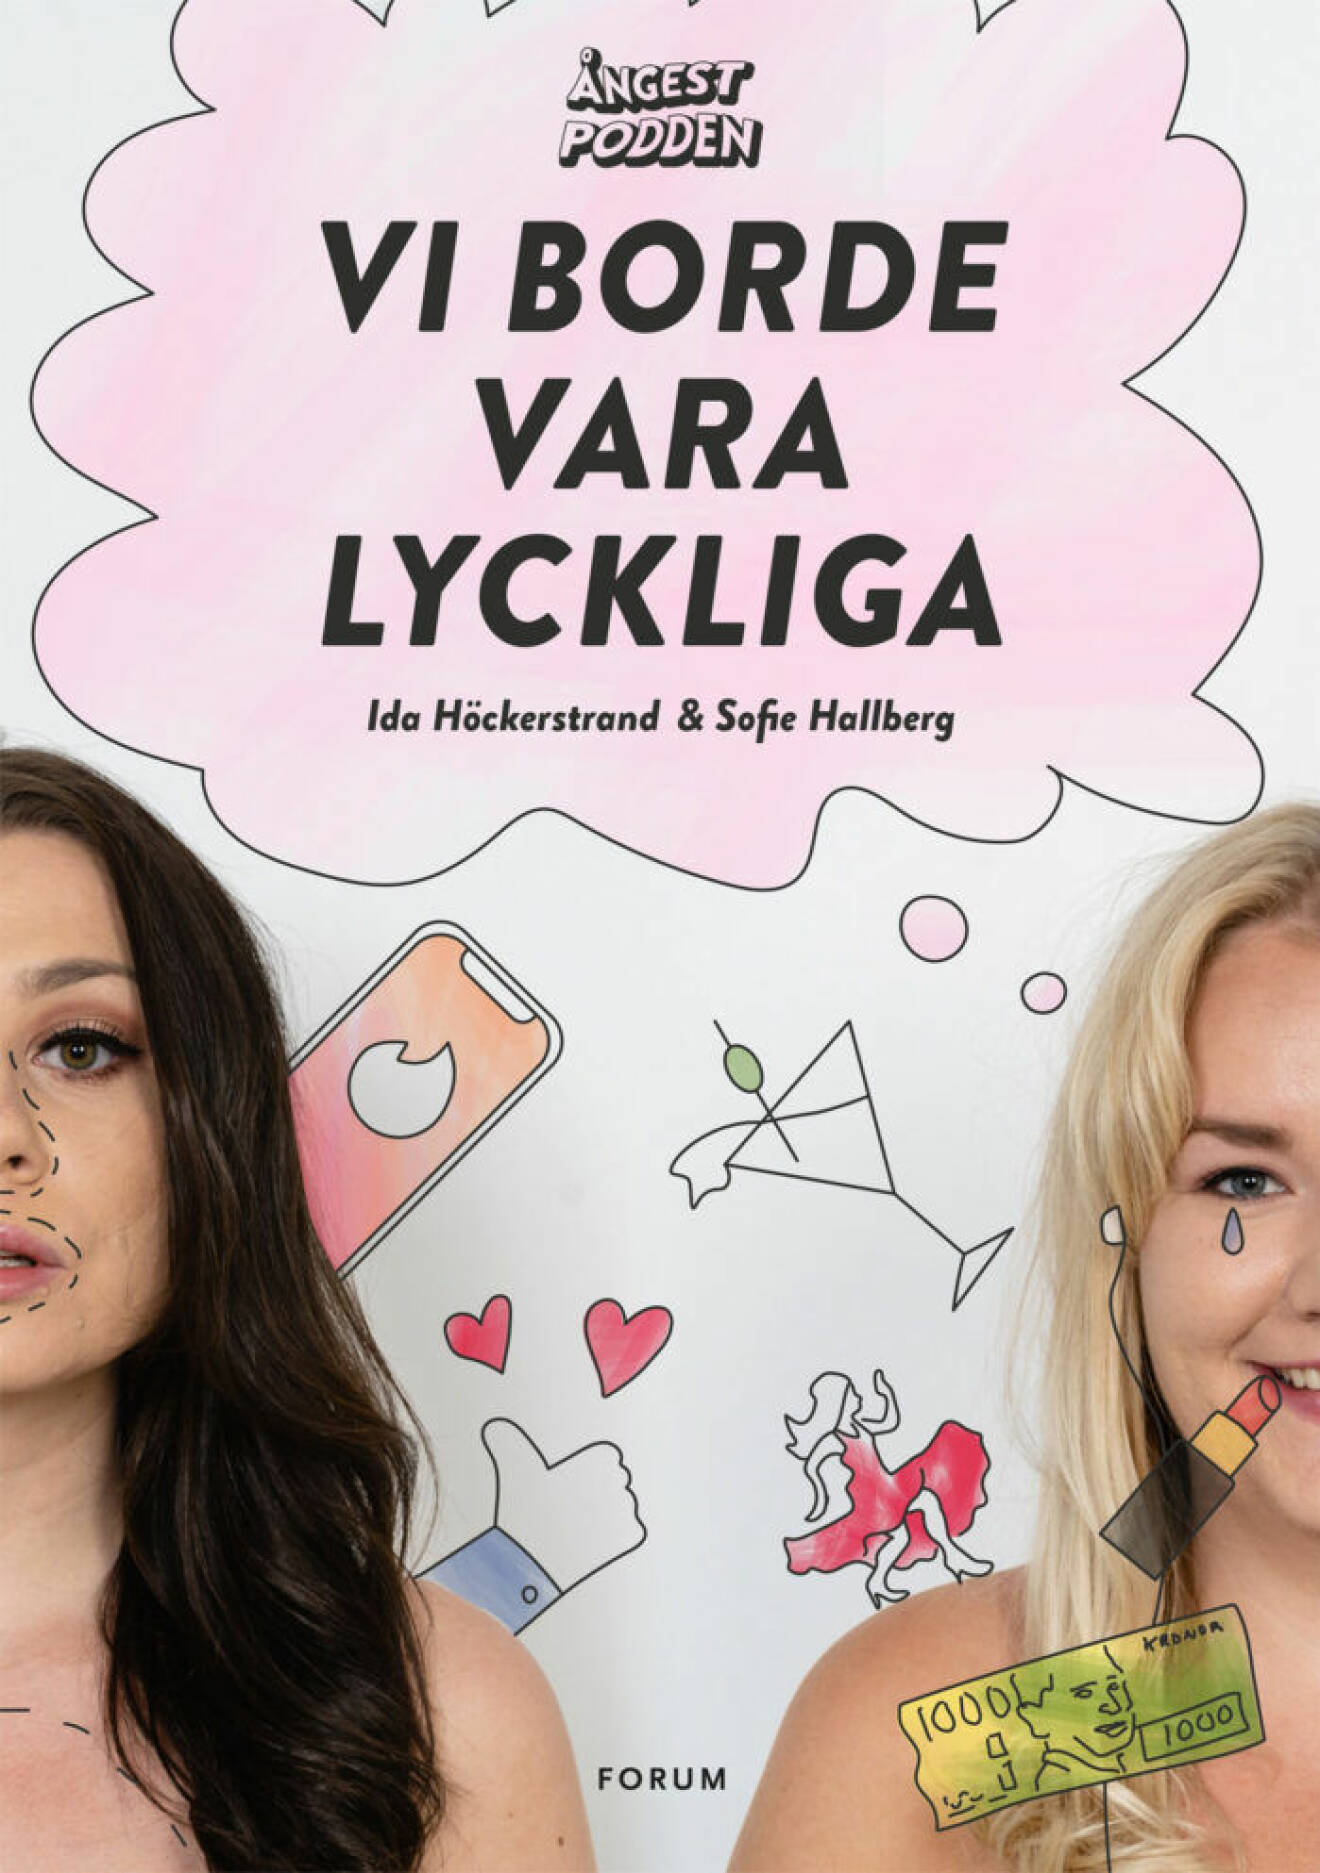 Ida Höckerstrand och Sofie Hallberg från Ångestpodden släpper sin första bok – Vi borde vara lyckliga